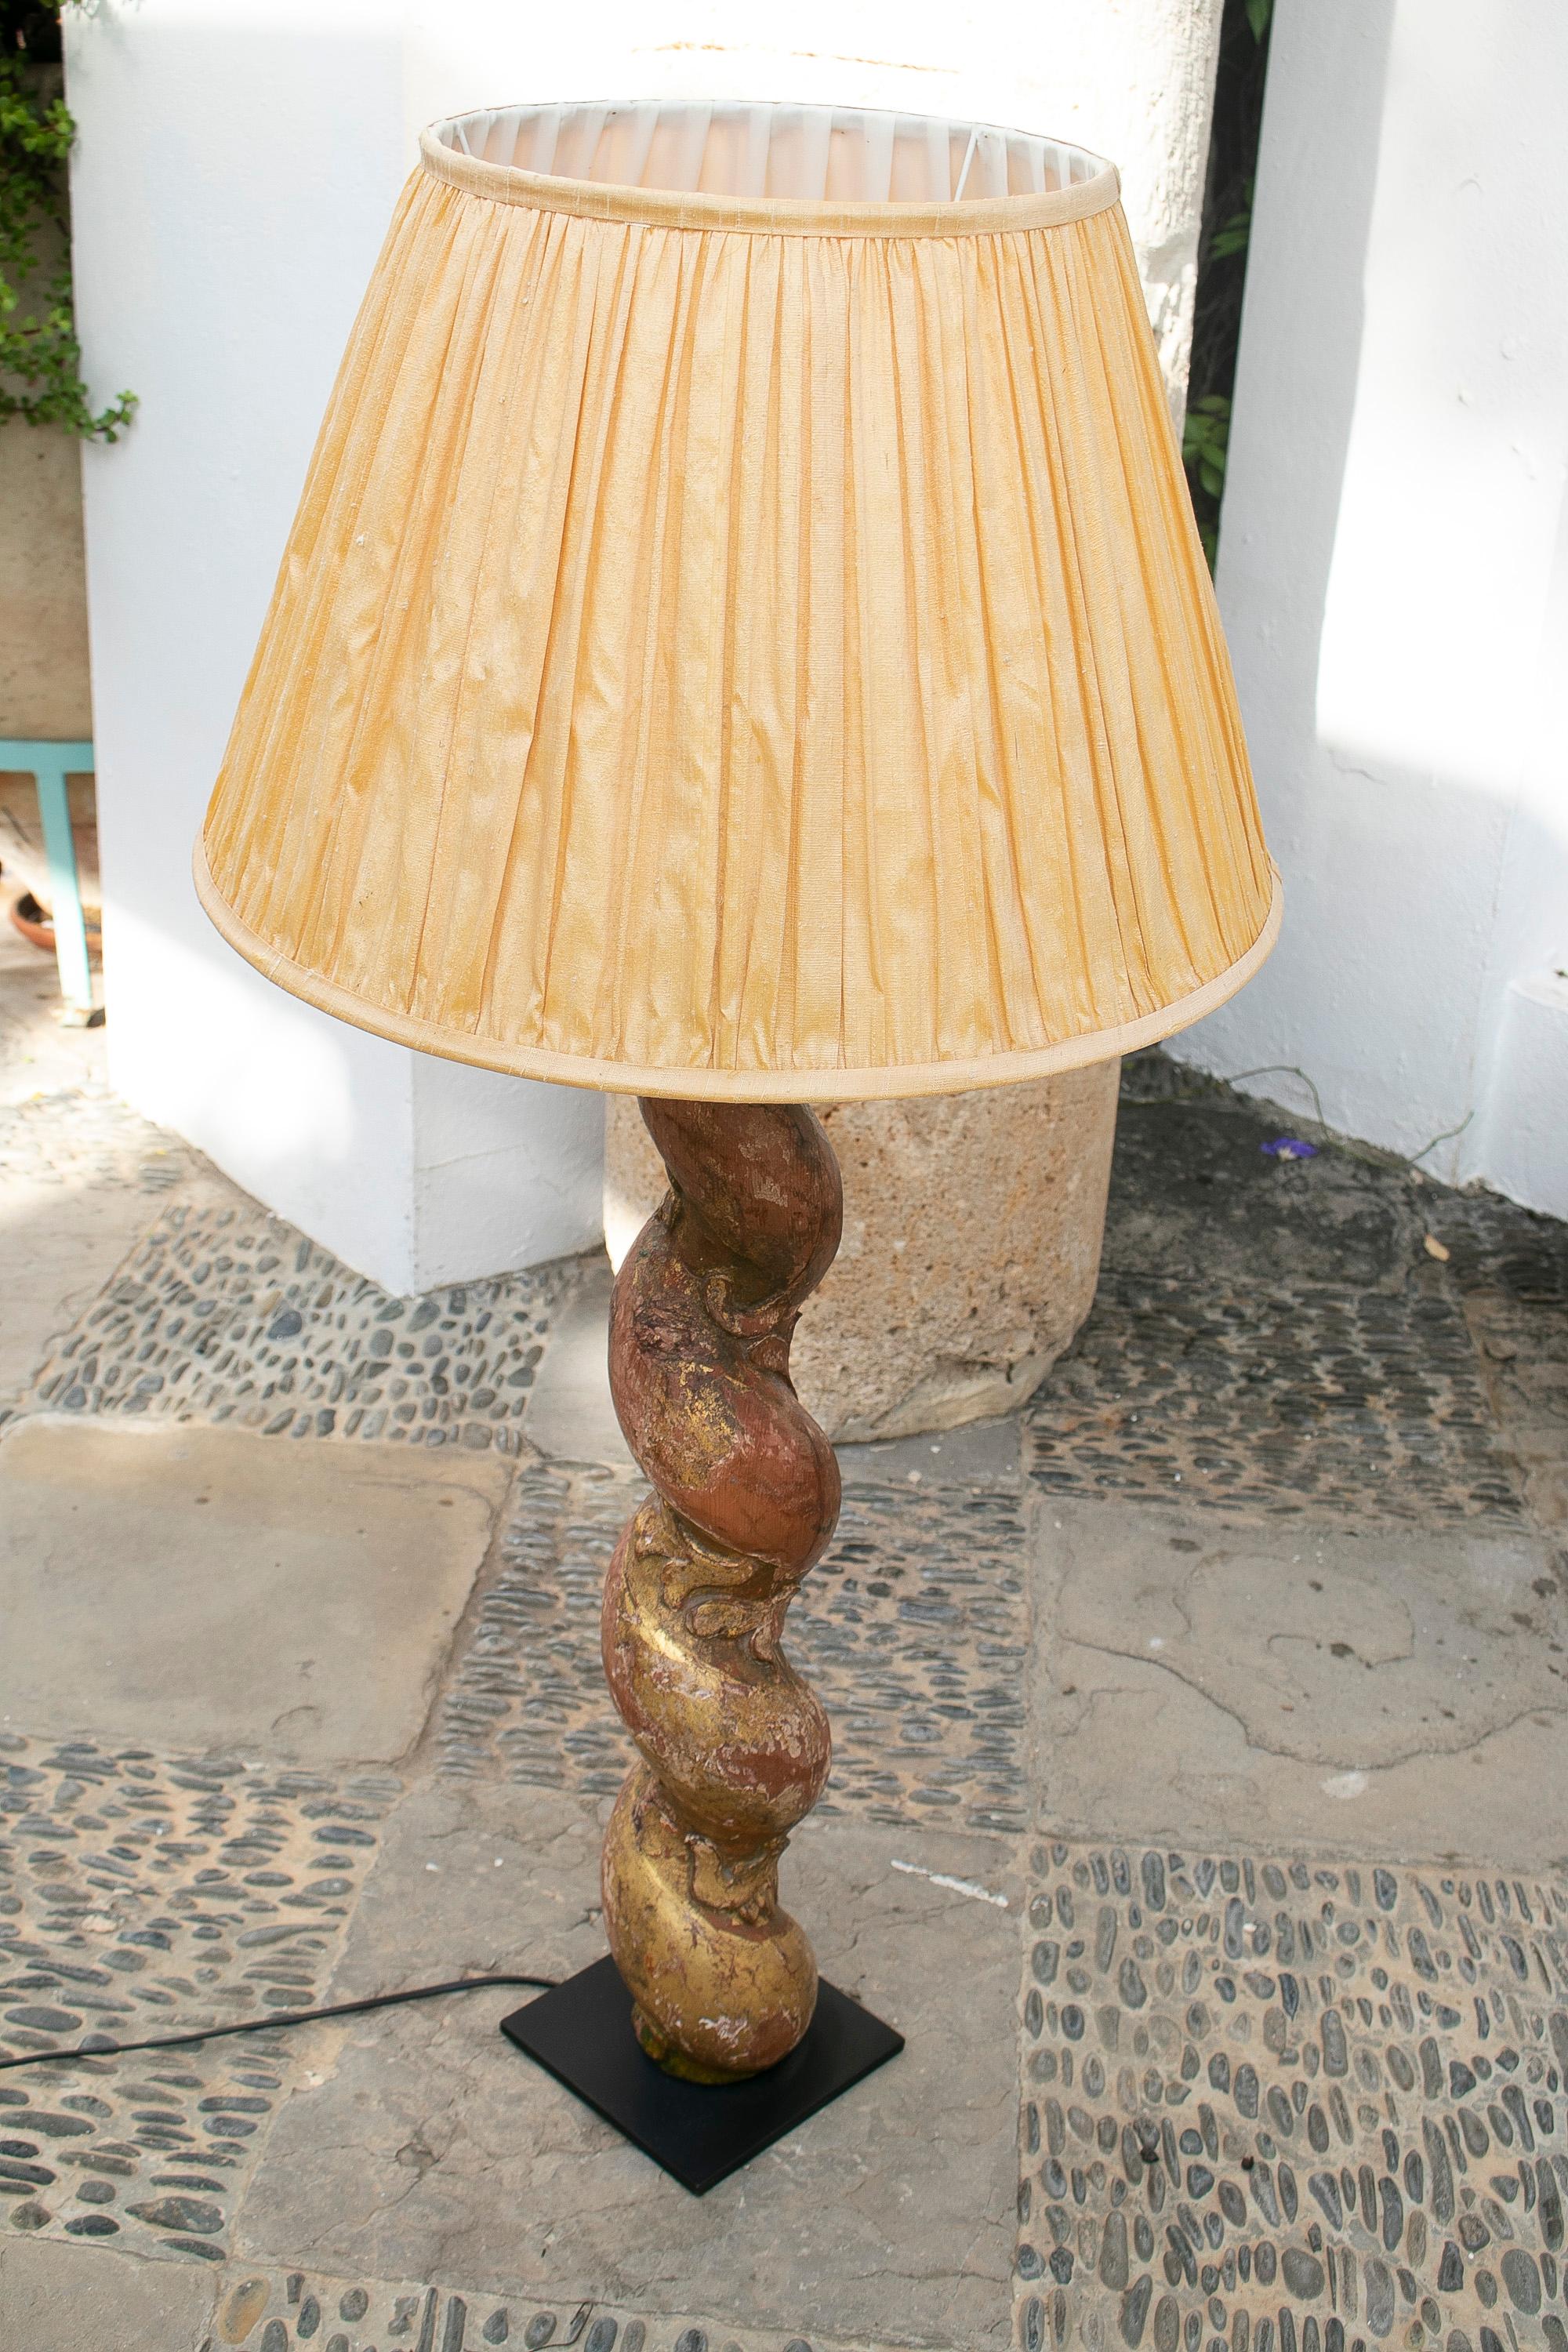 polychrome Holztischlampe aus dem 18. Jahrhundert im salomonischen Stil

Maße mit Lampenschirm: 103x50cm
Der Lampenschirm ist nicht im Preis enthalten.